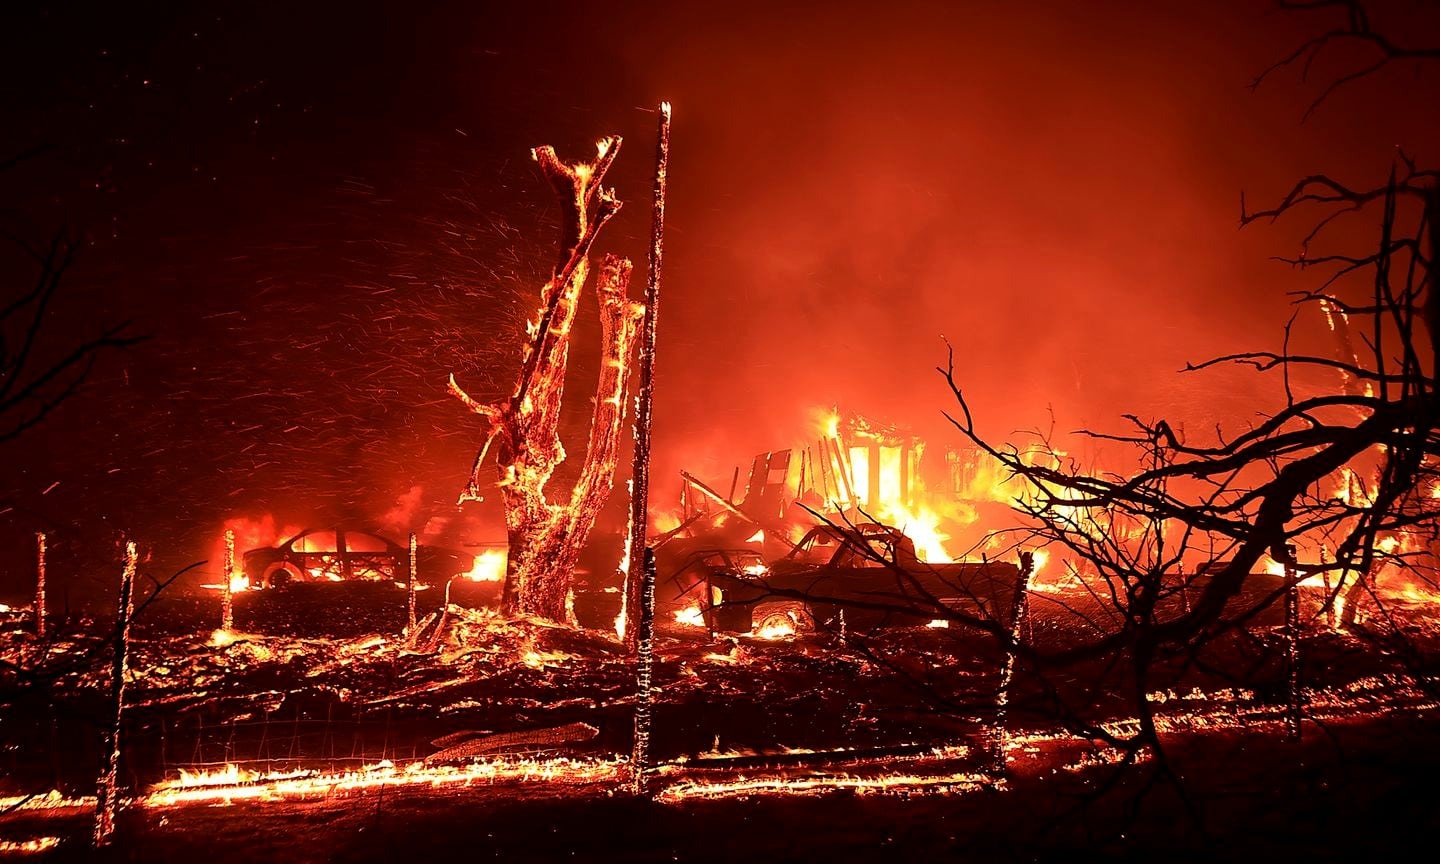 Incendios forestales en California dejan bomberos heridos, daños y evacuaciones (VIDEO)